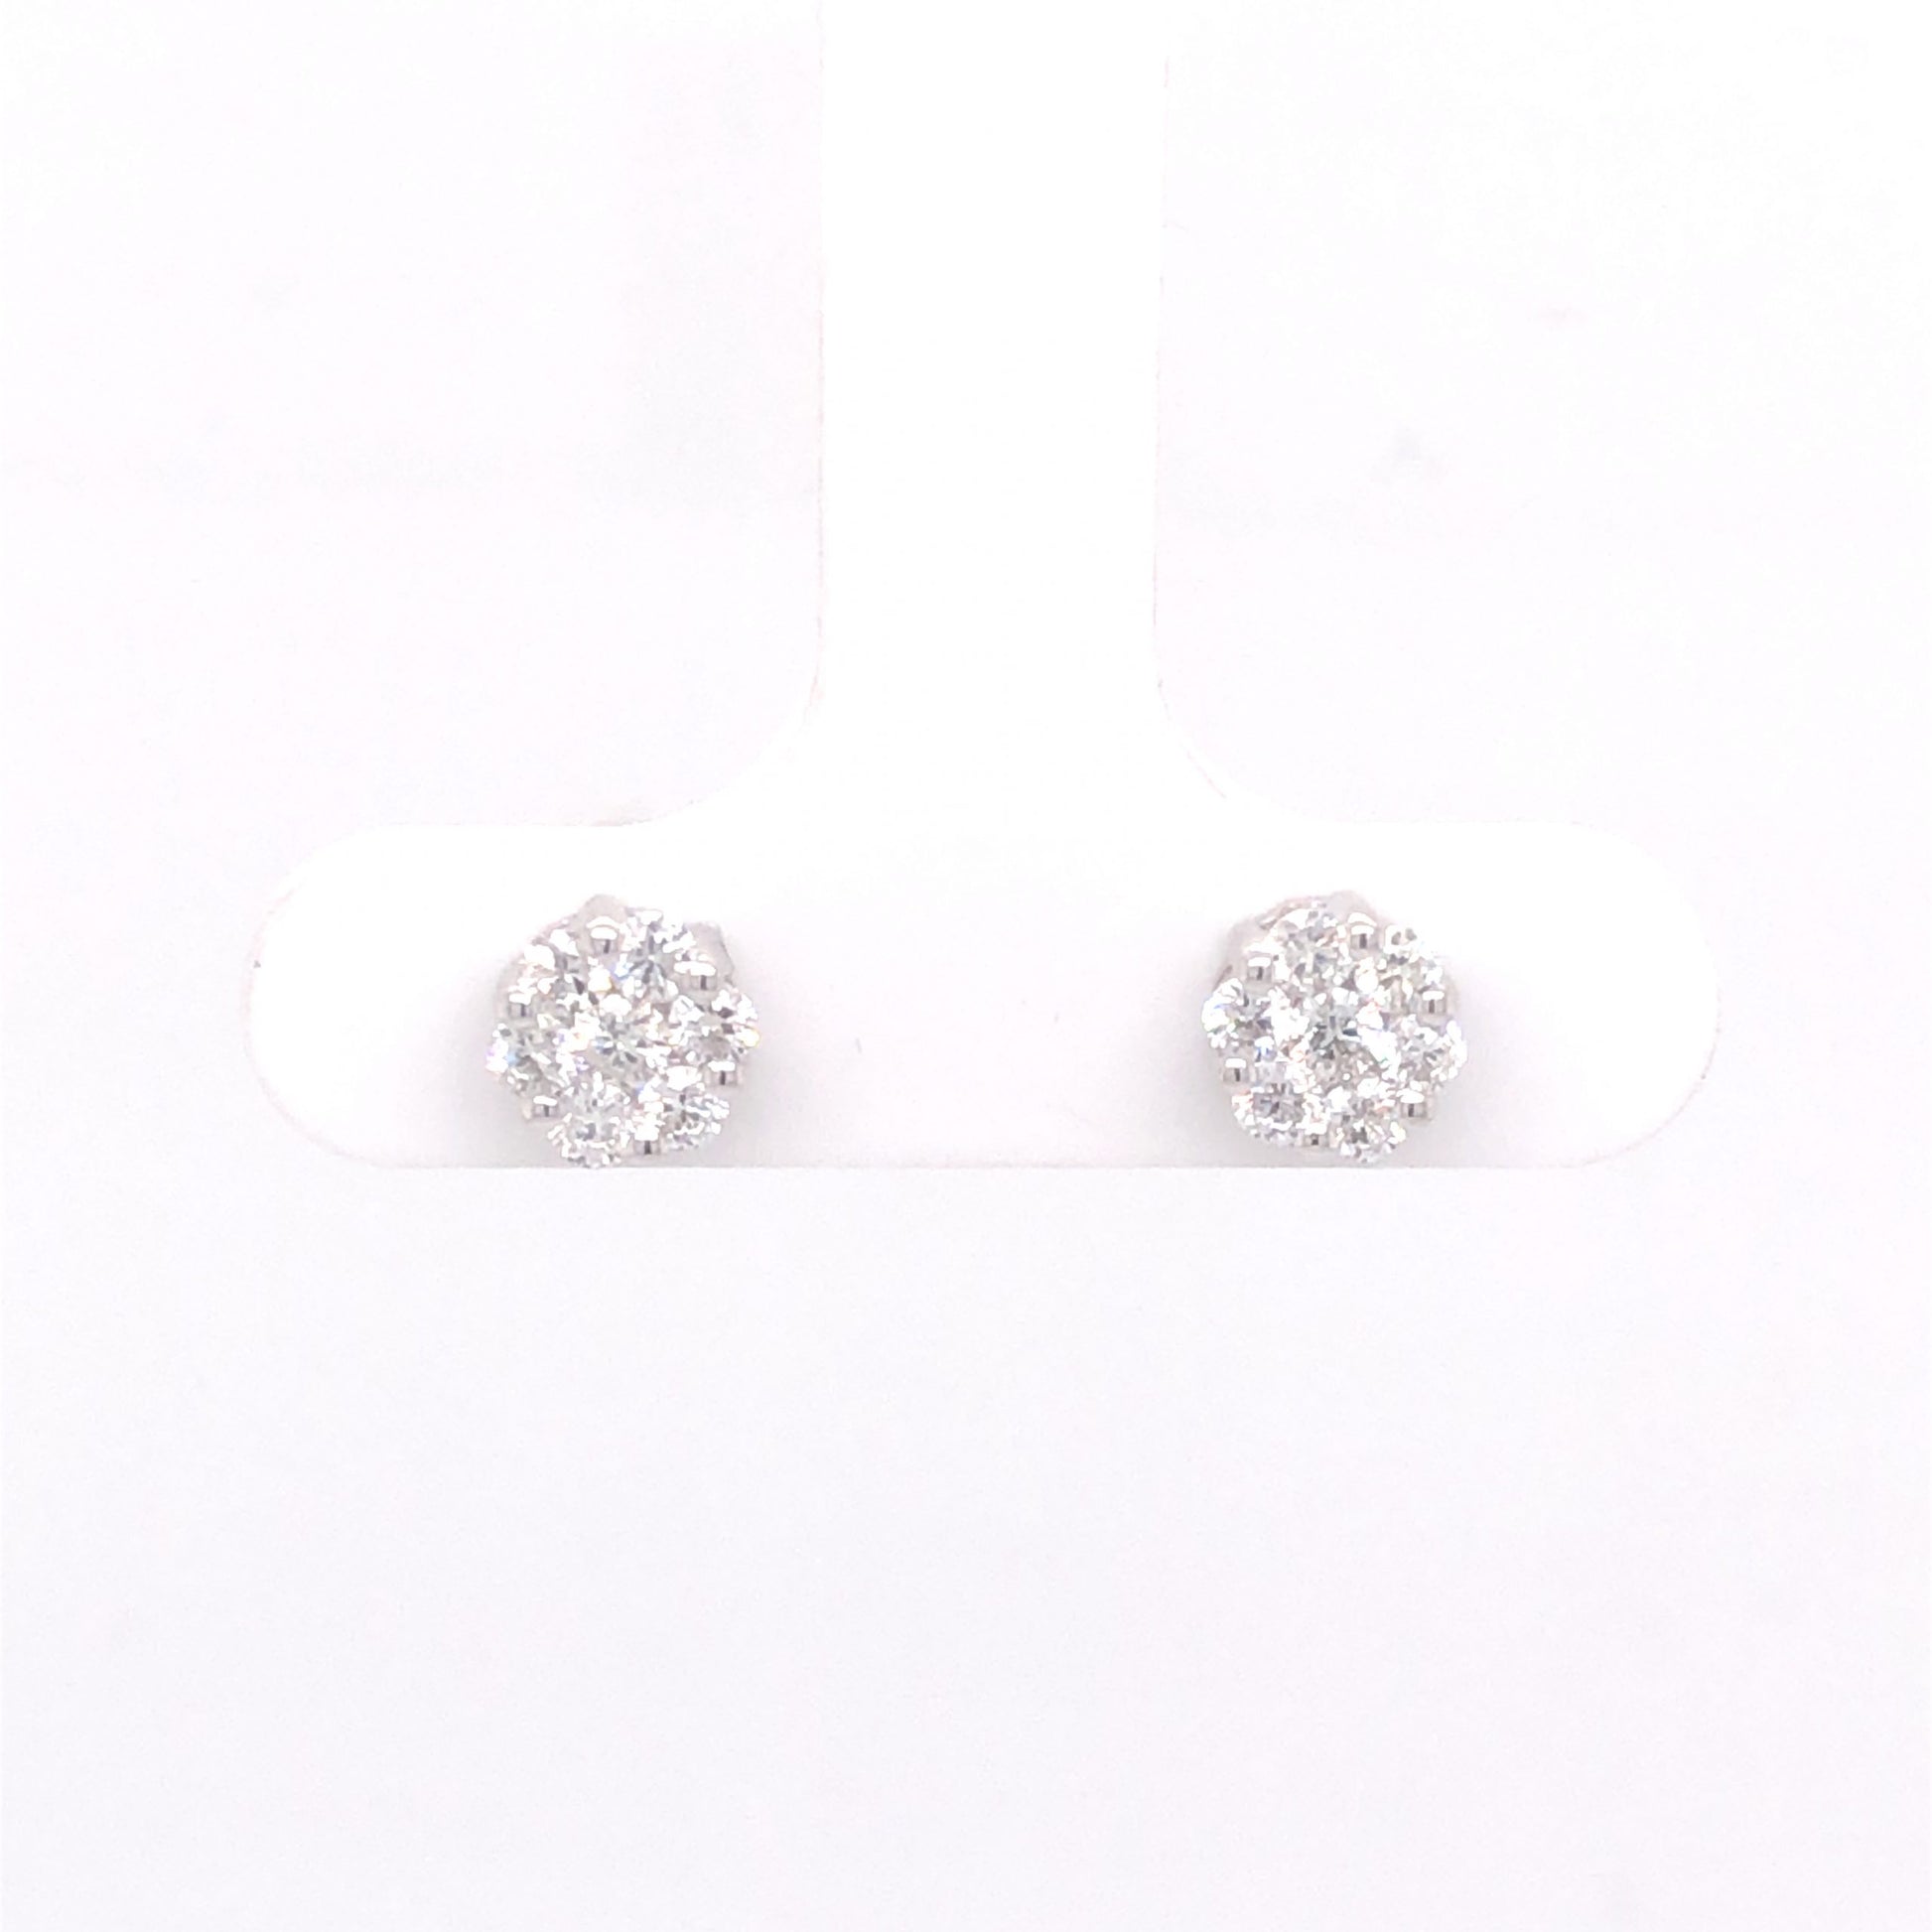 .49 Diamond Cluster Earring Studs in 14k White Gold